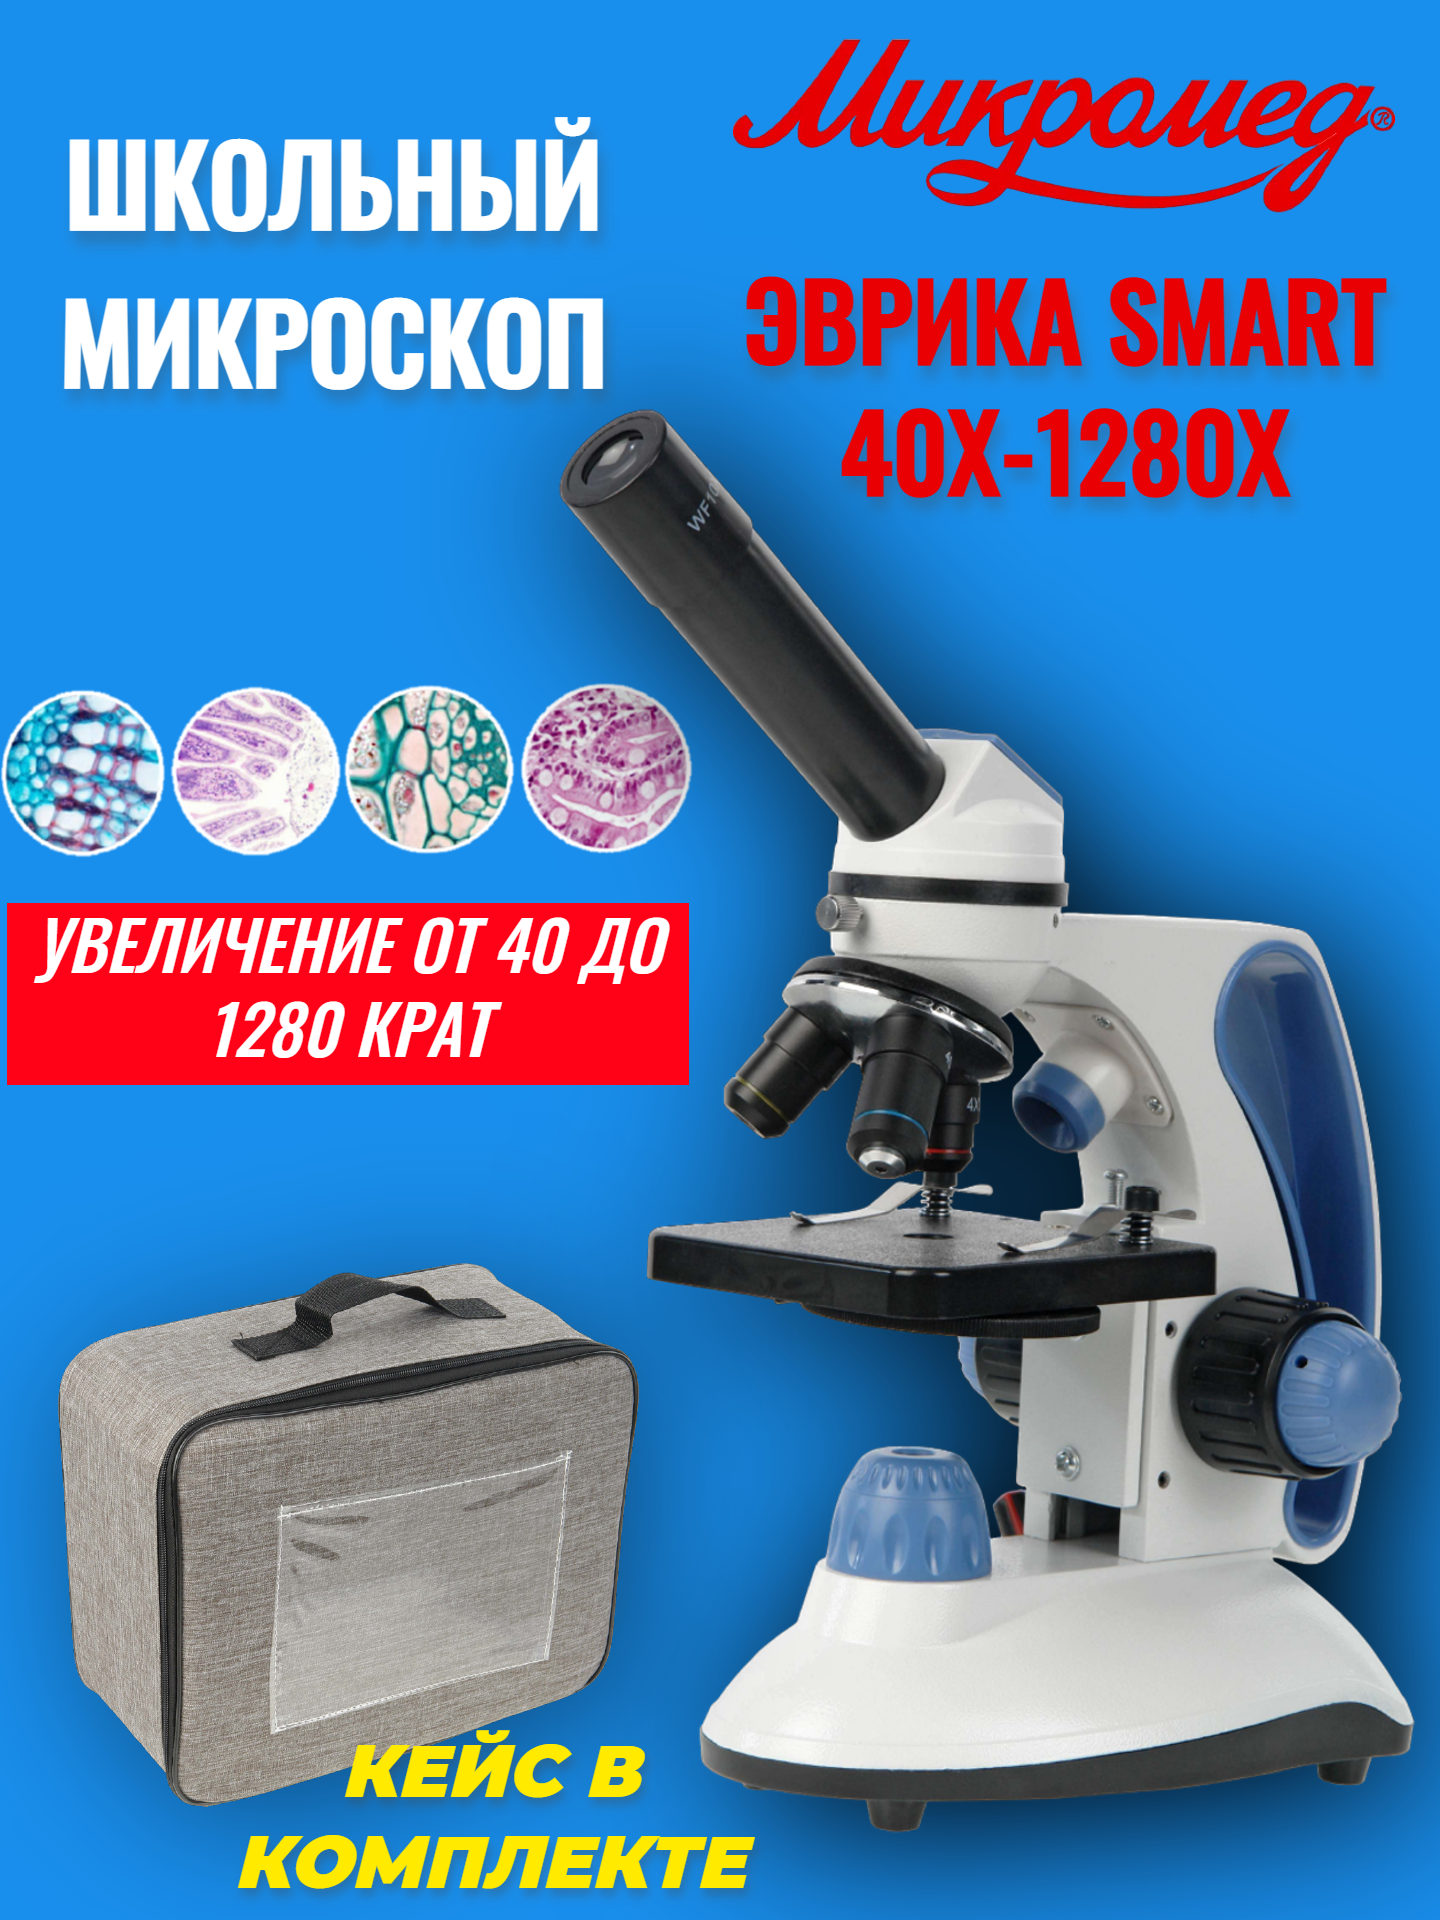 Микроскоп школьный учебный Микромед Эврика SMART 40х-1280х в текстильном кейсе микроскоп школьный инвертированный эврика 40х 320х микромед 26398